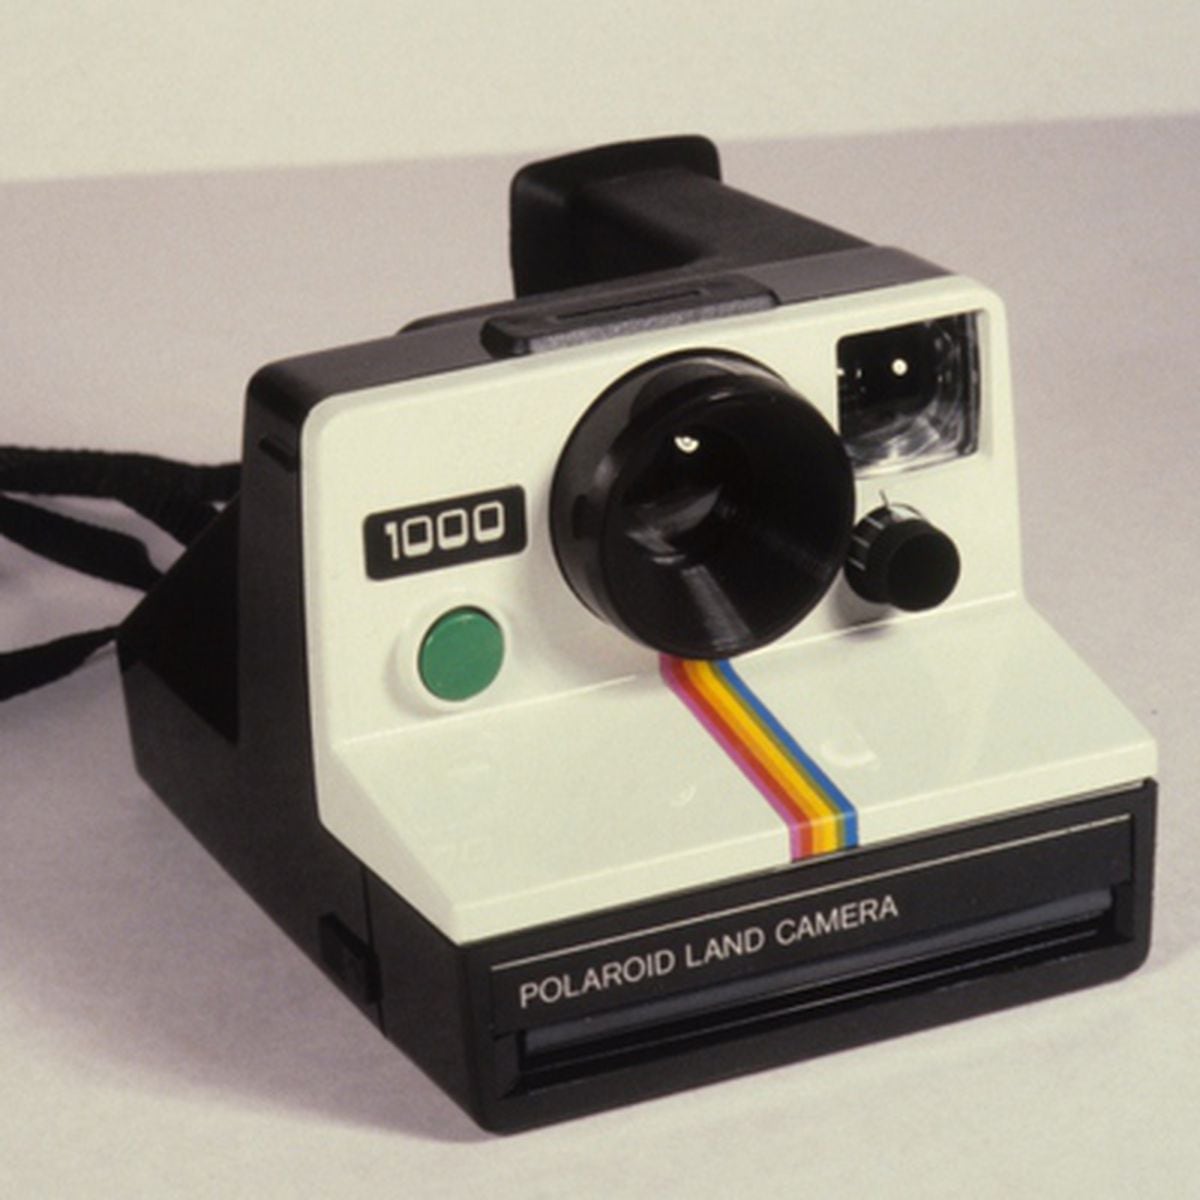 Series de tiempo caballo de fuerza lobo Polaroid, el pionero de la fotografía instantánea cumple años | Tecnología  | EL PAÍS